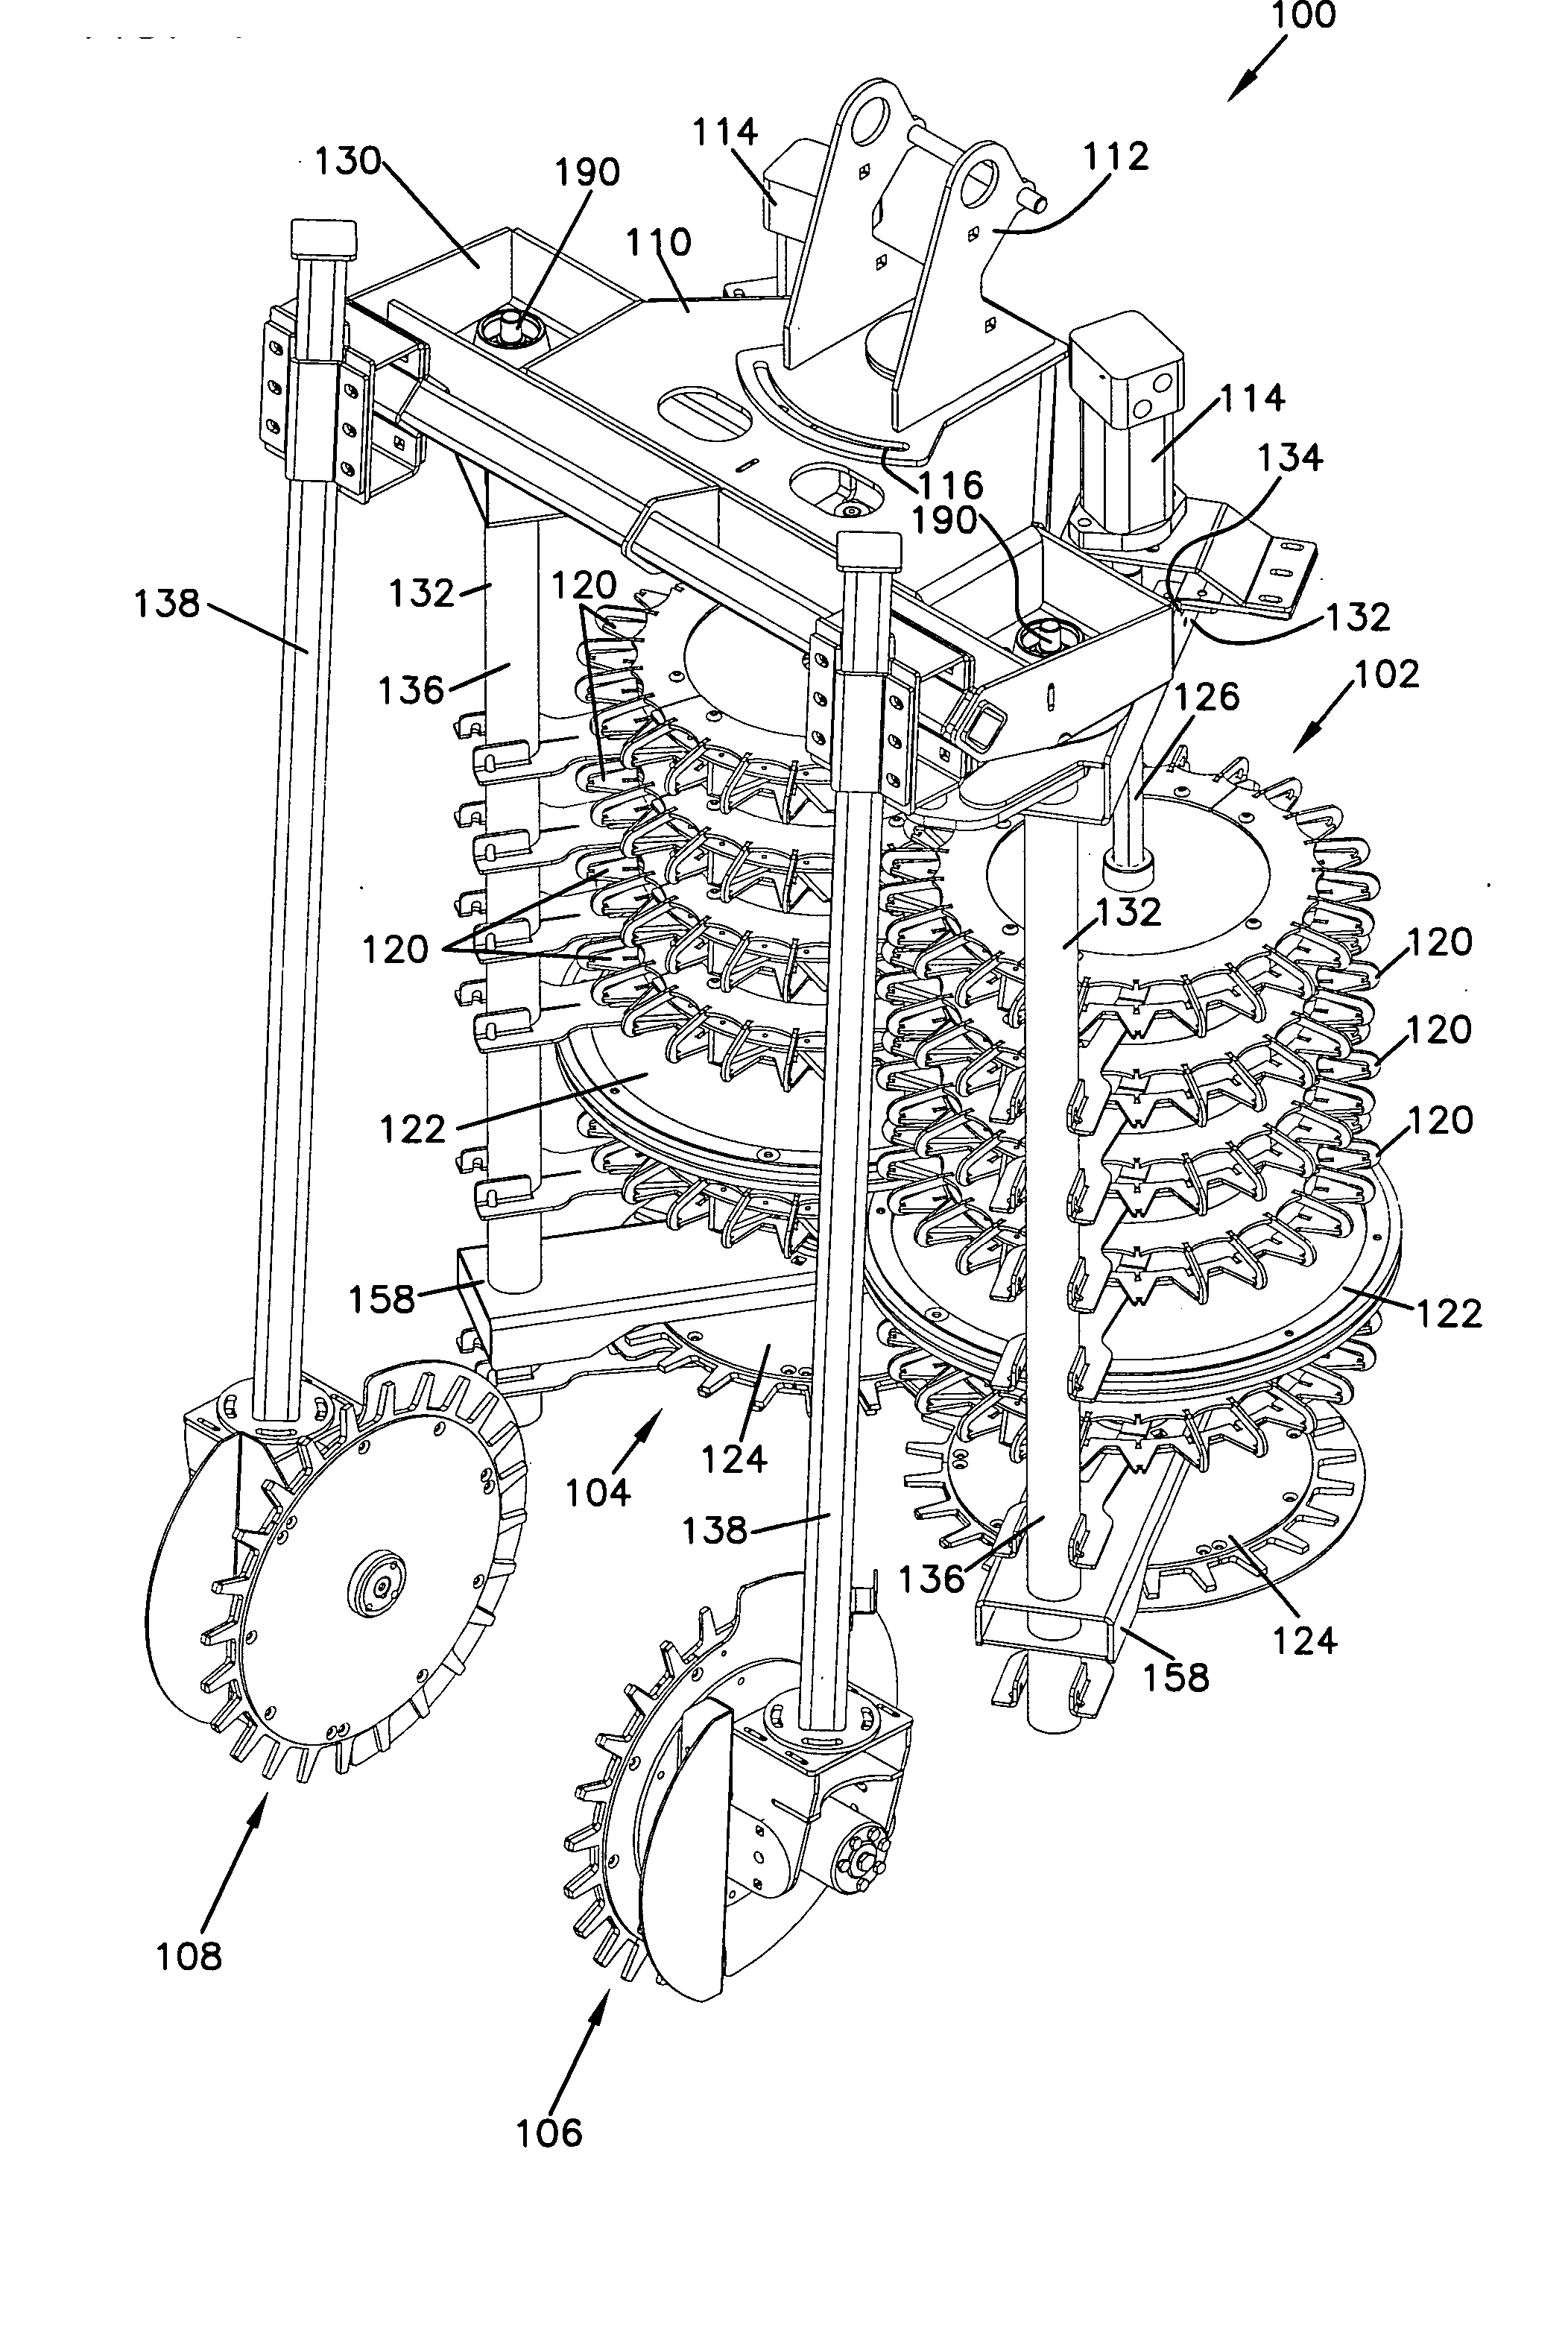 Cutter apparatus